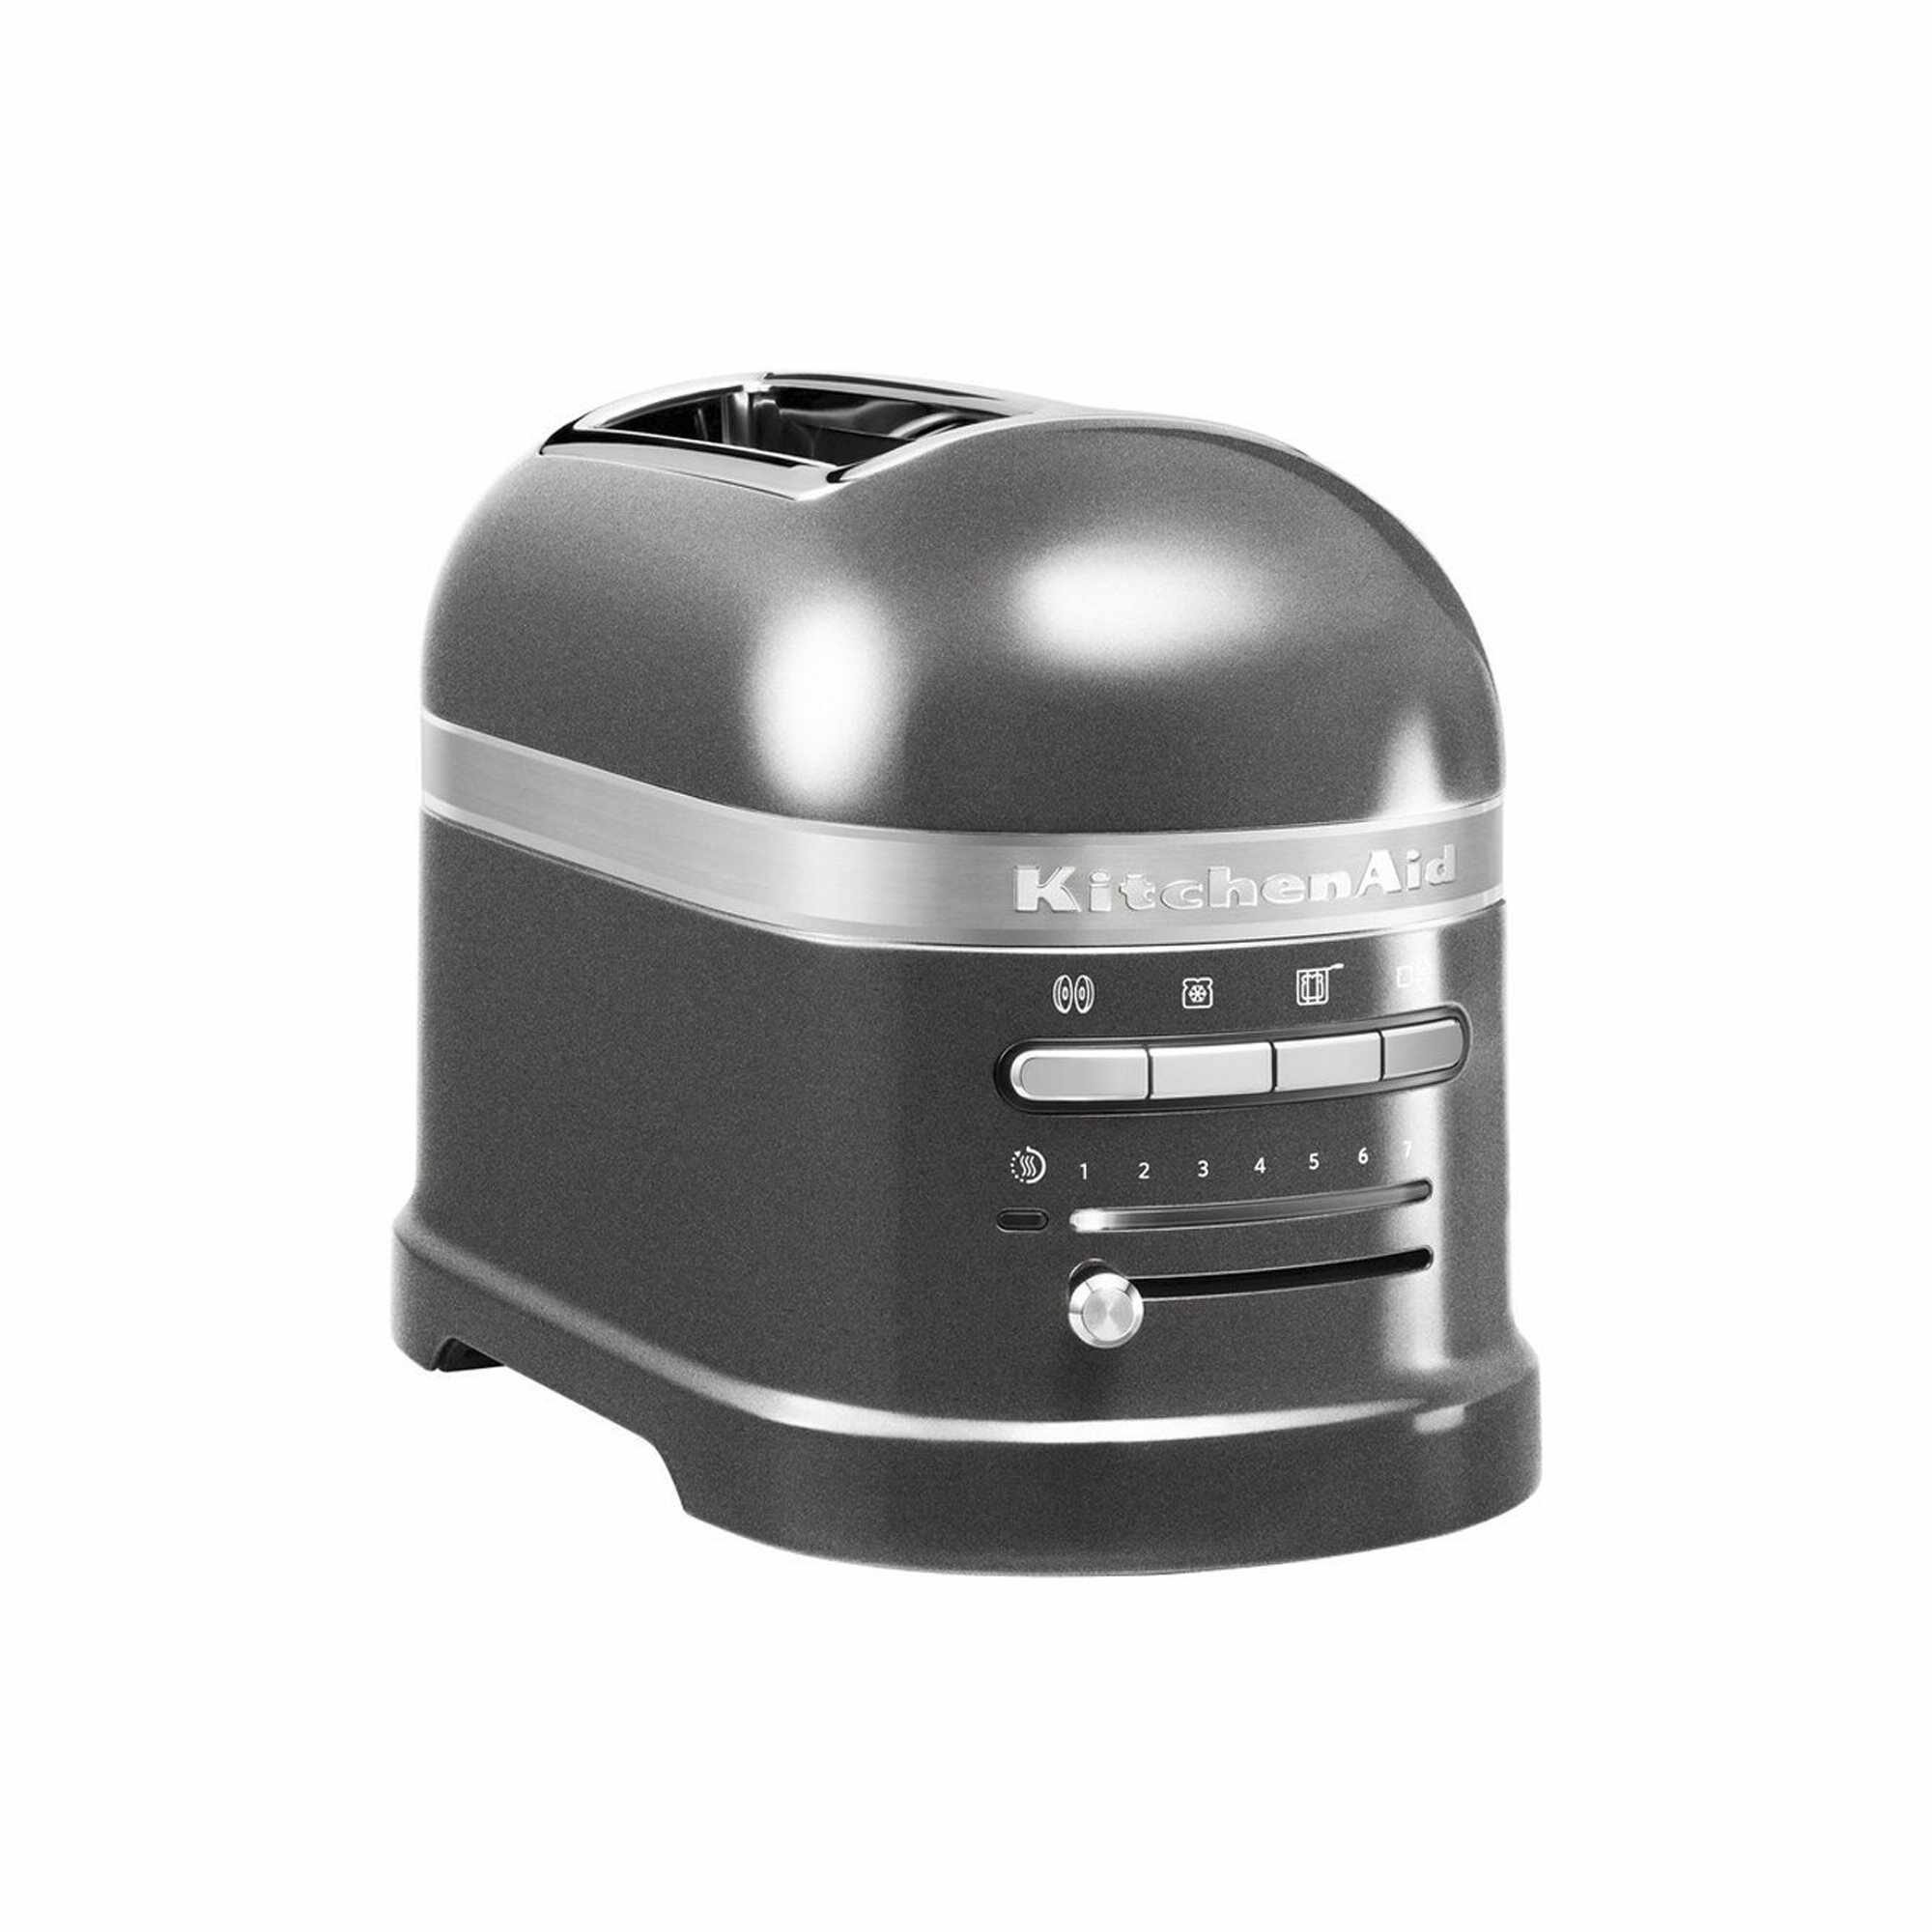 Toaster 2 sloturi Artisan New 5KMT2204E, 2500W, KitchenAid